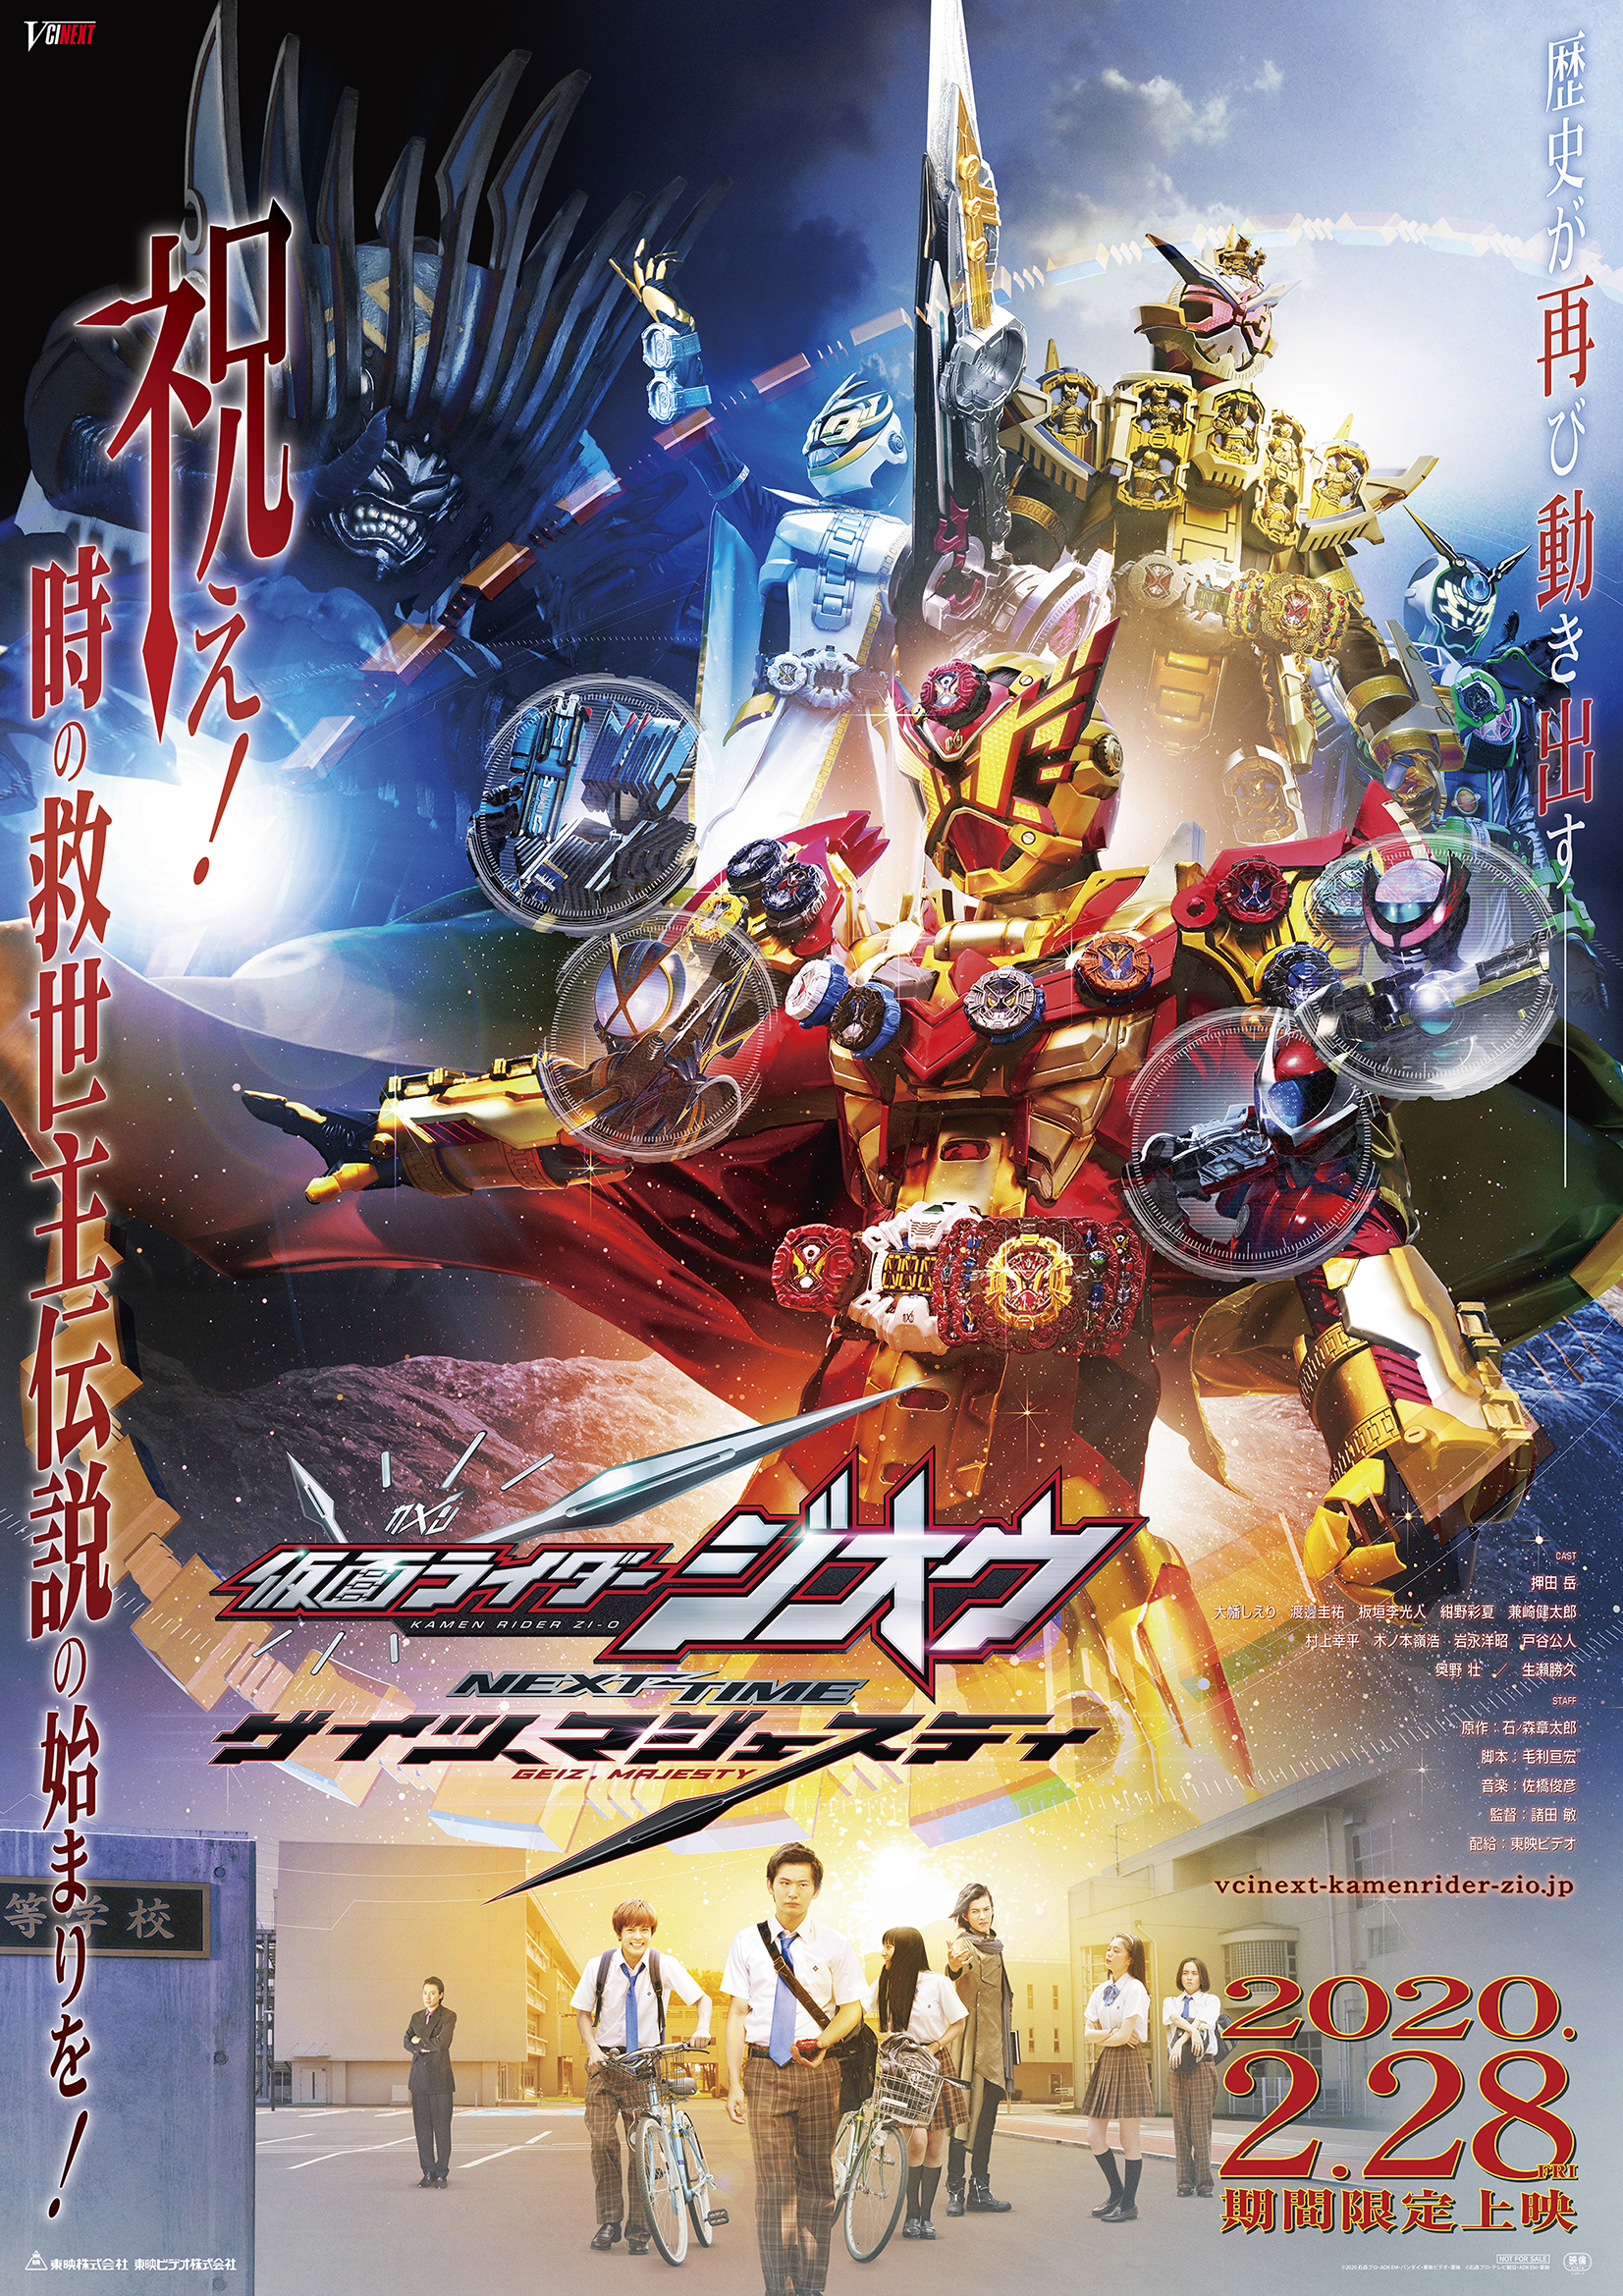 Kamen Rider Zi-O Next Time: Geiz, Majesty Trailer Revealed tout Kamen Rider Zi-O 